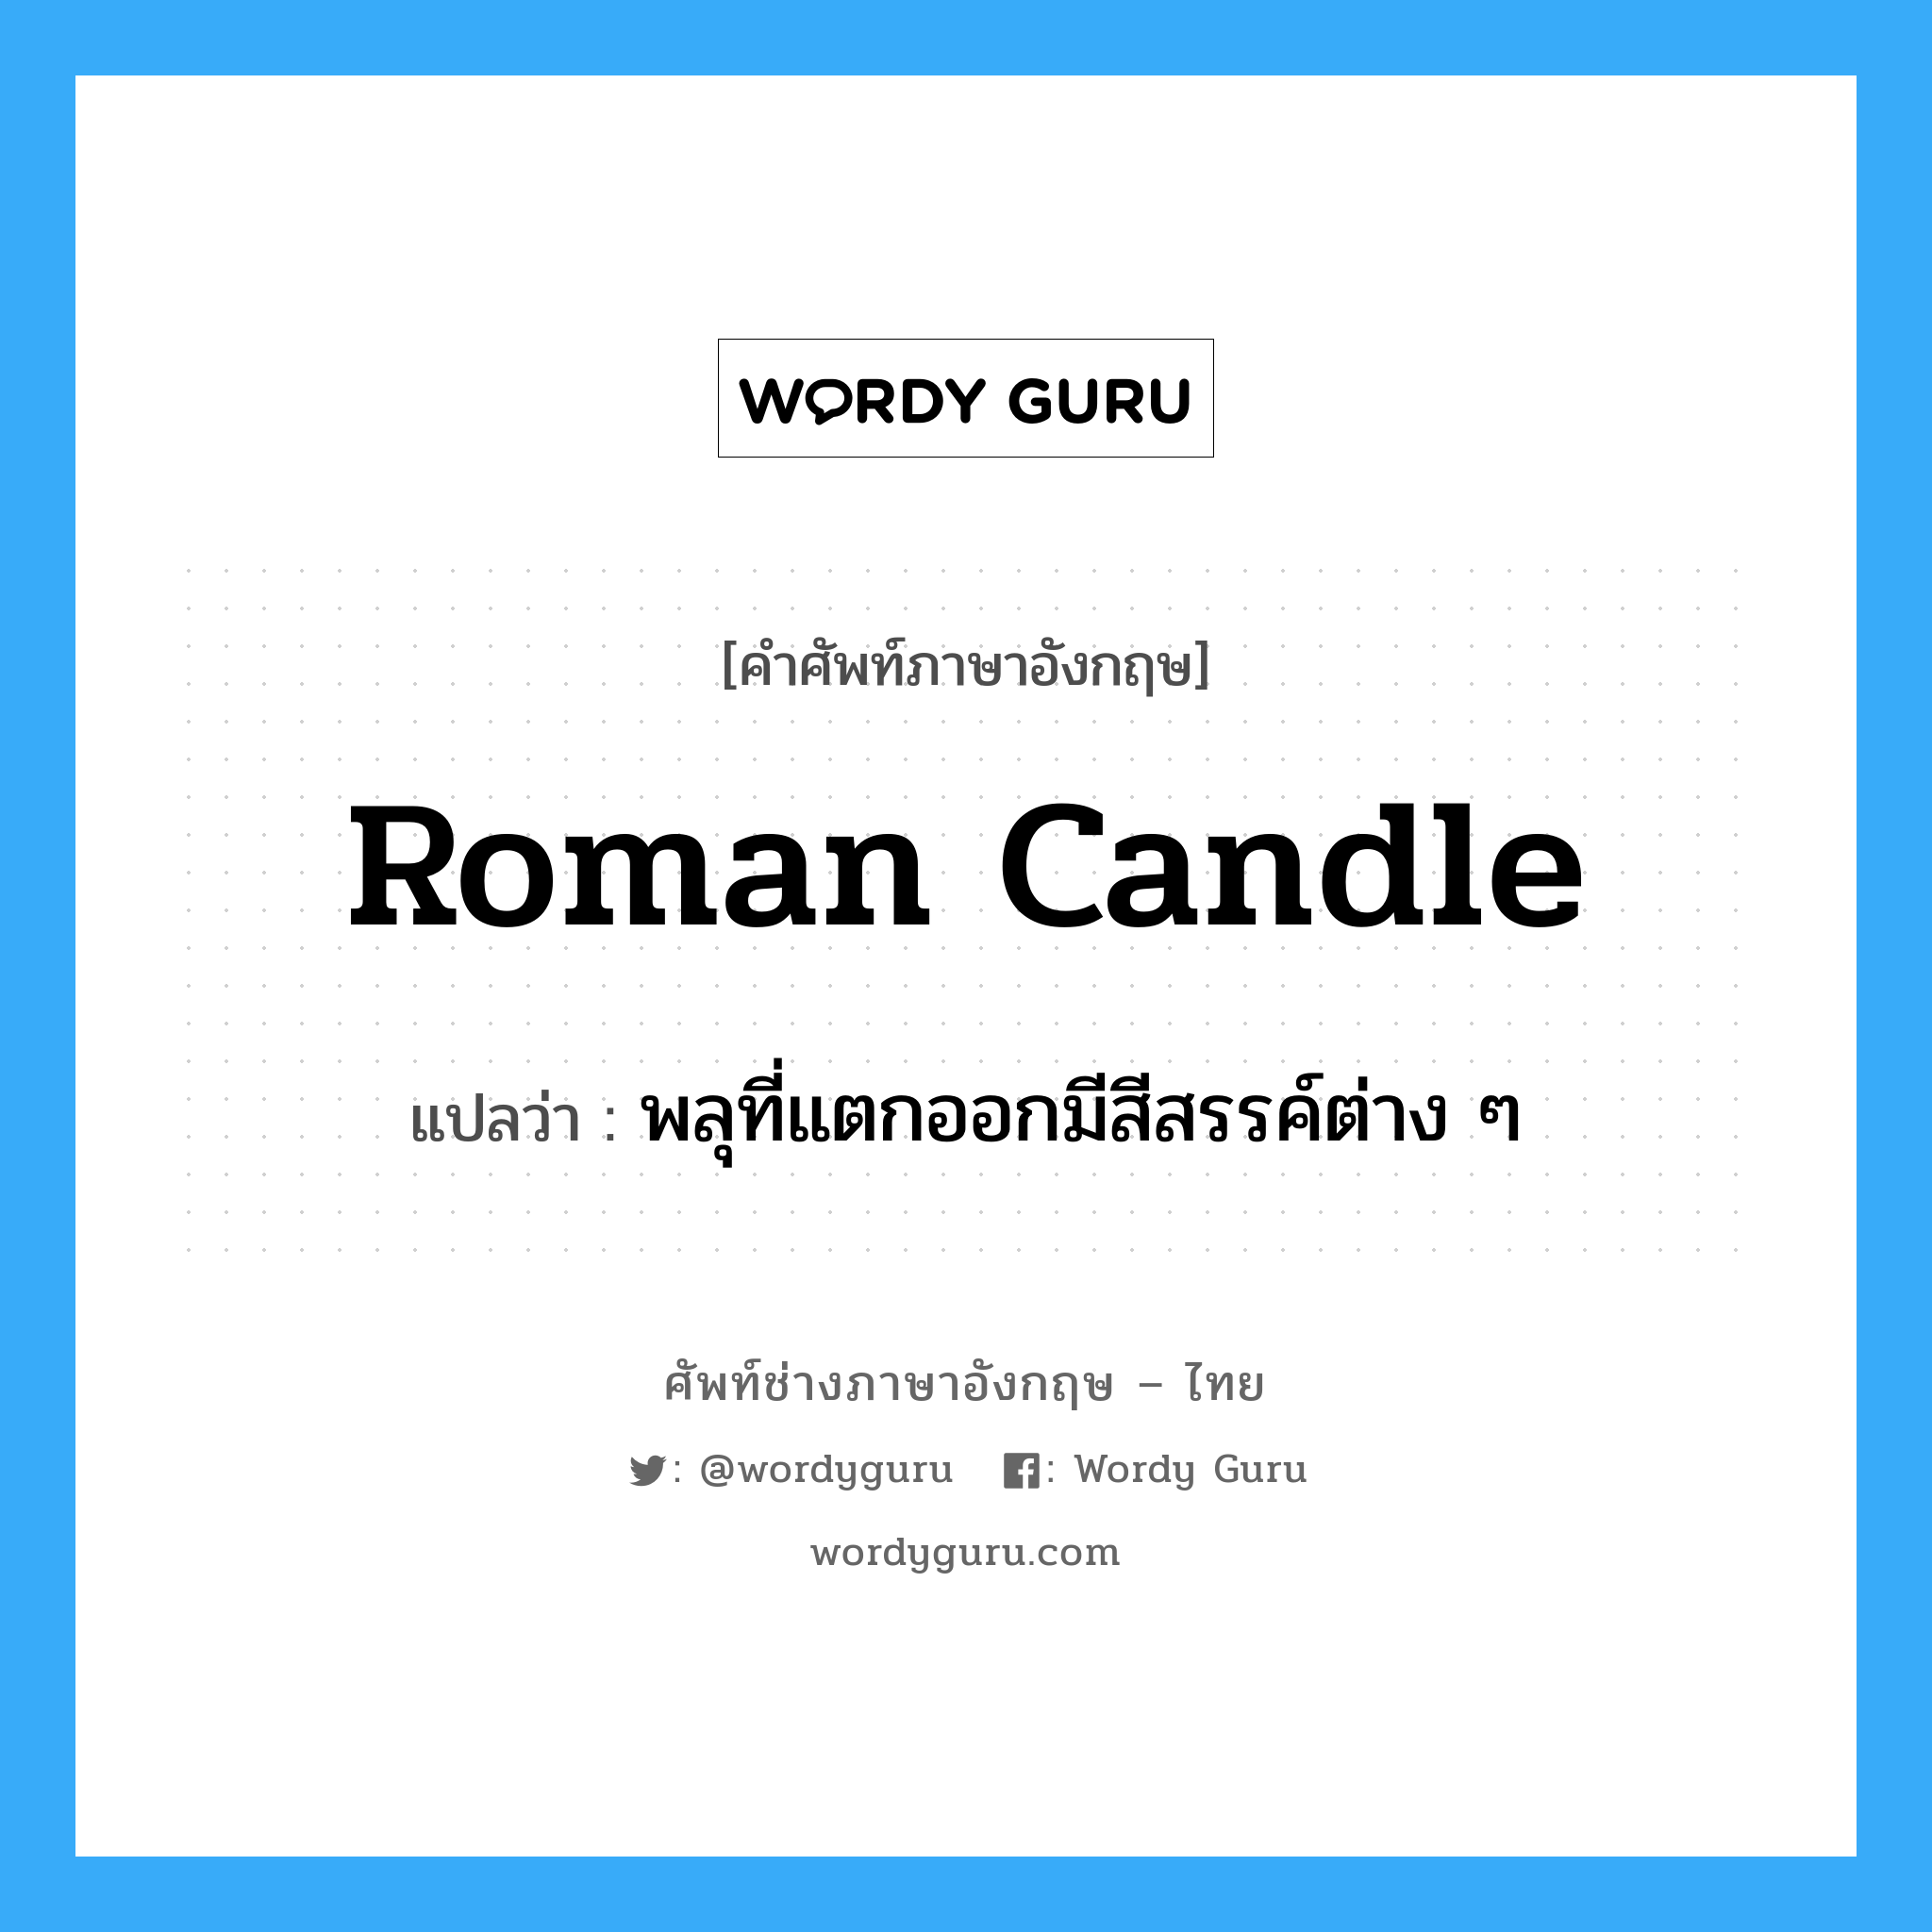 พลุที่แตกออกมีสีสรรค์ต่าง ๆ ภาษาอังกฤษ?, คำศัพท์ช่างภาษาอังกฤษ - ไทย พลุที่แตกออกมีสีสรรค์ต่าง ๆ คำศัพท์ภาษาอังกฤษ พลุที่แตกออกมีสีสรรค์ต่าง ๆ แปลว่า Roman candle